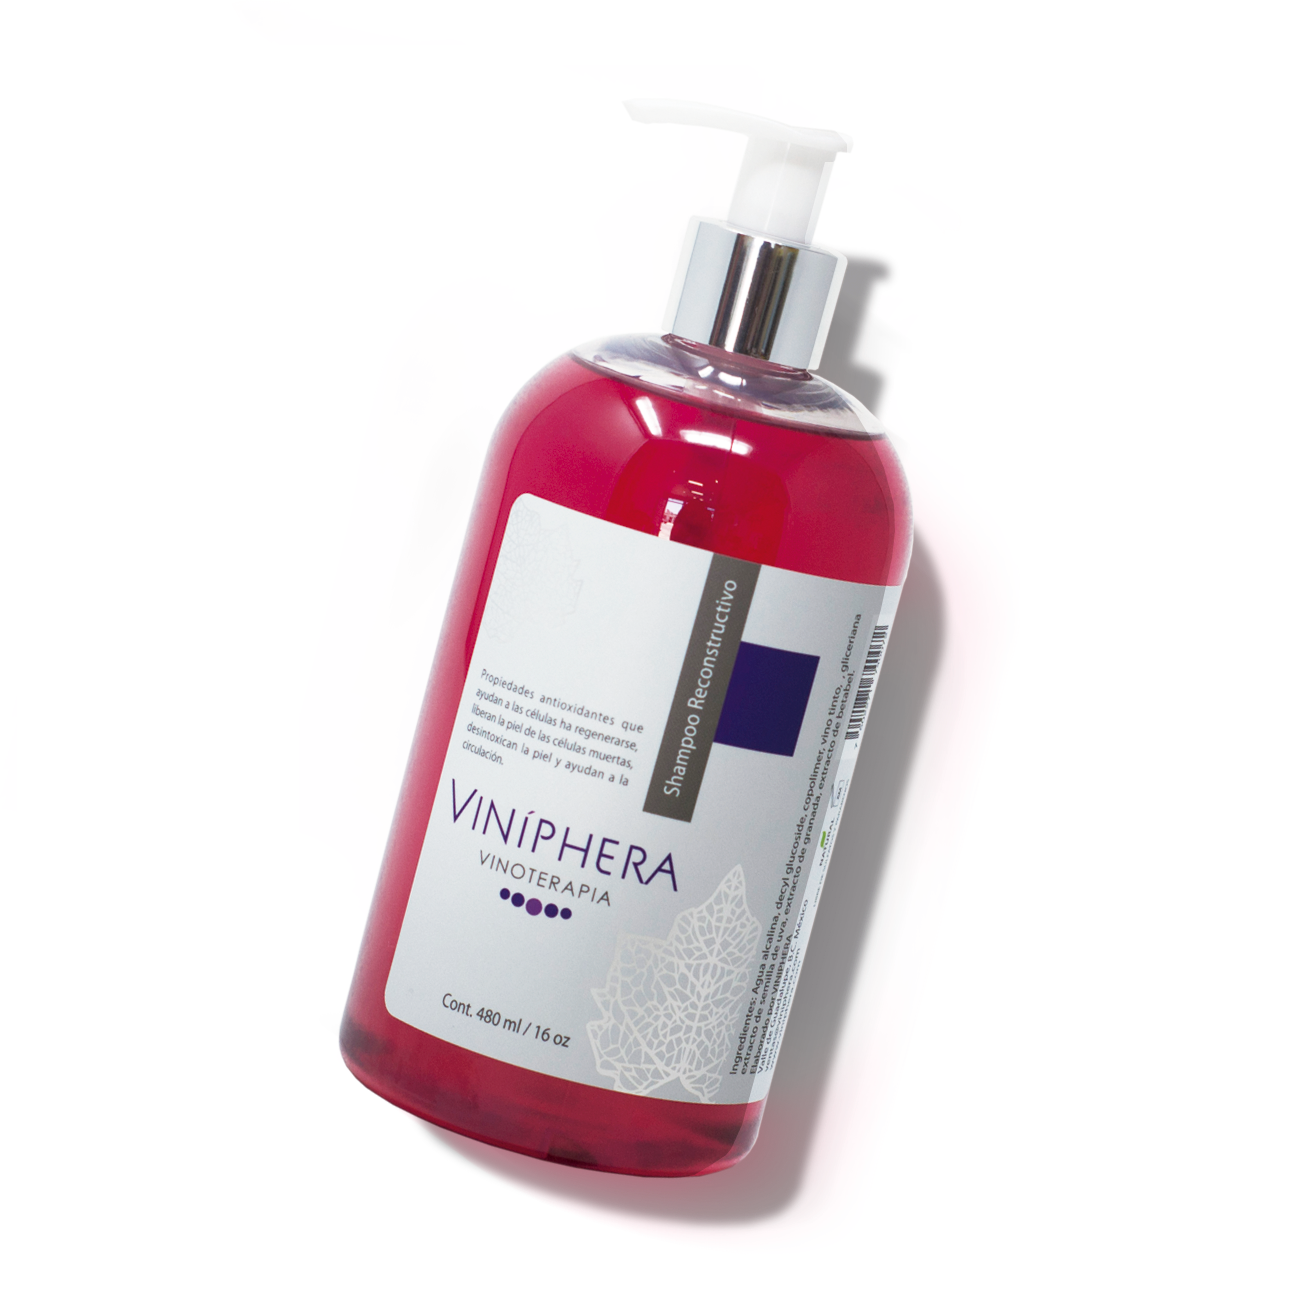 Viniphera- Shampoo reconstructivo Vinoterapia